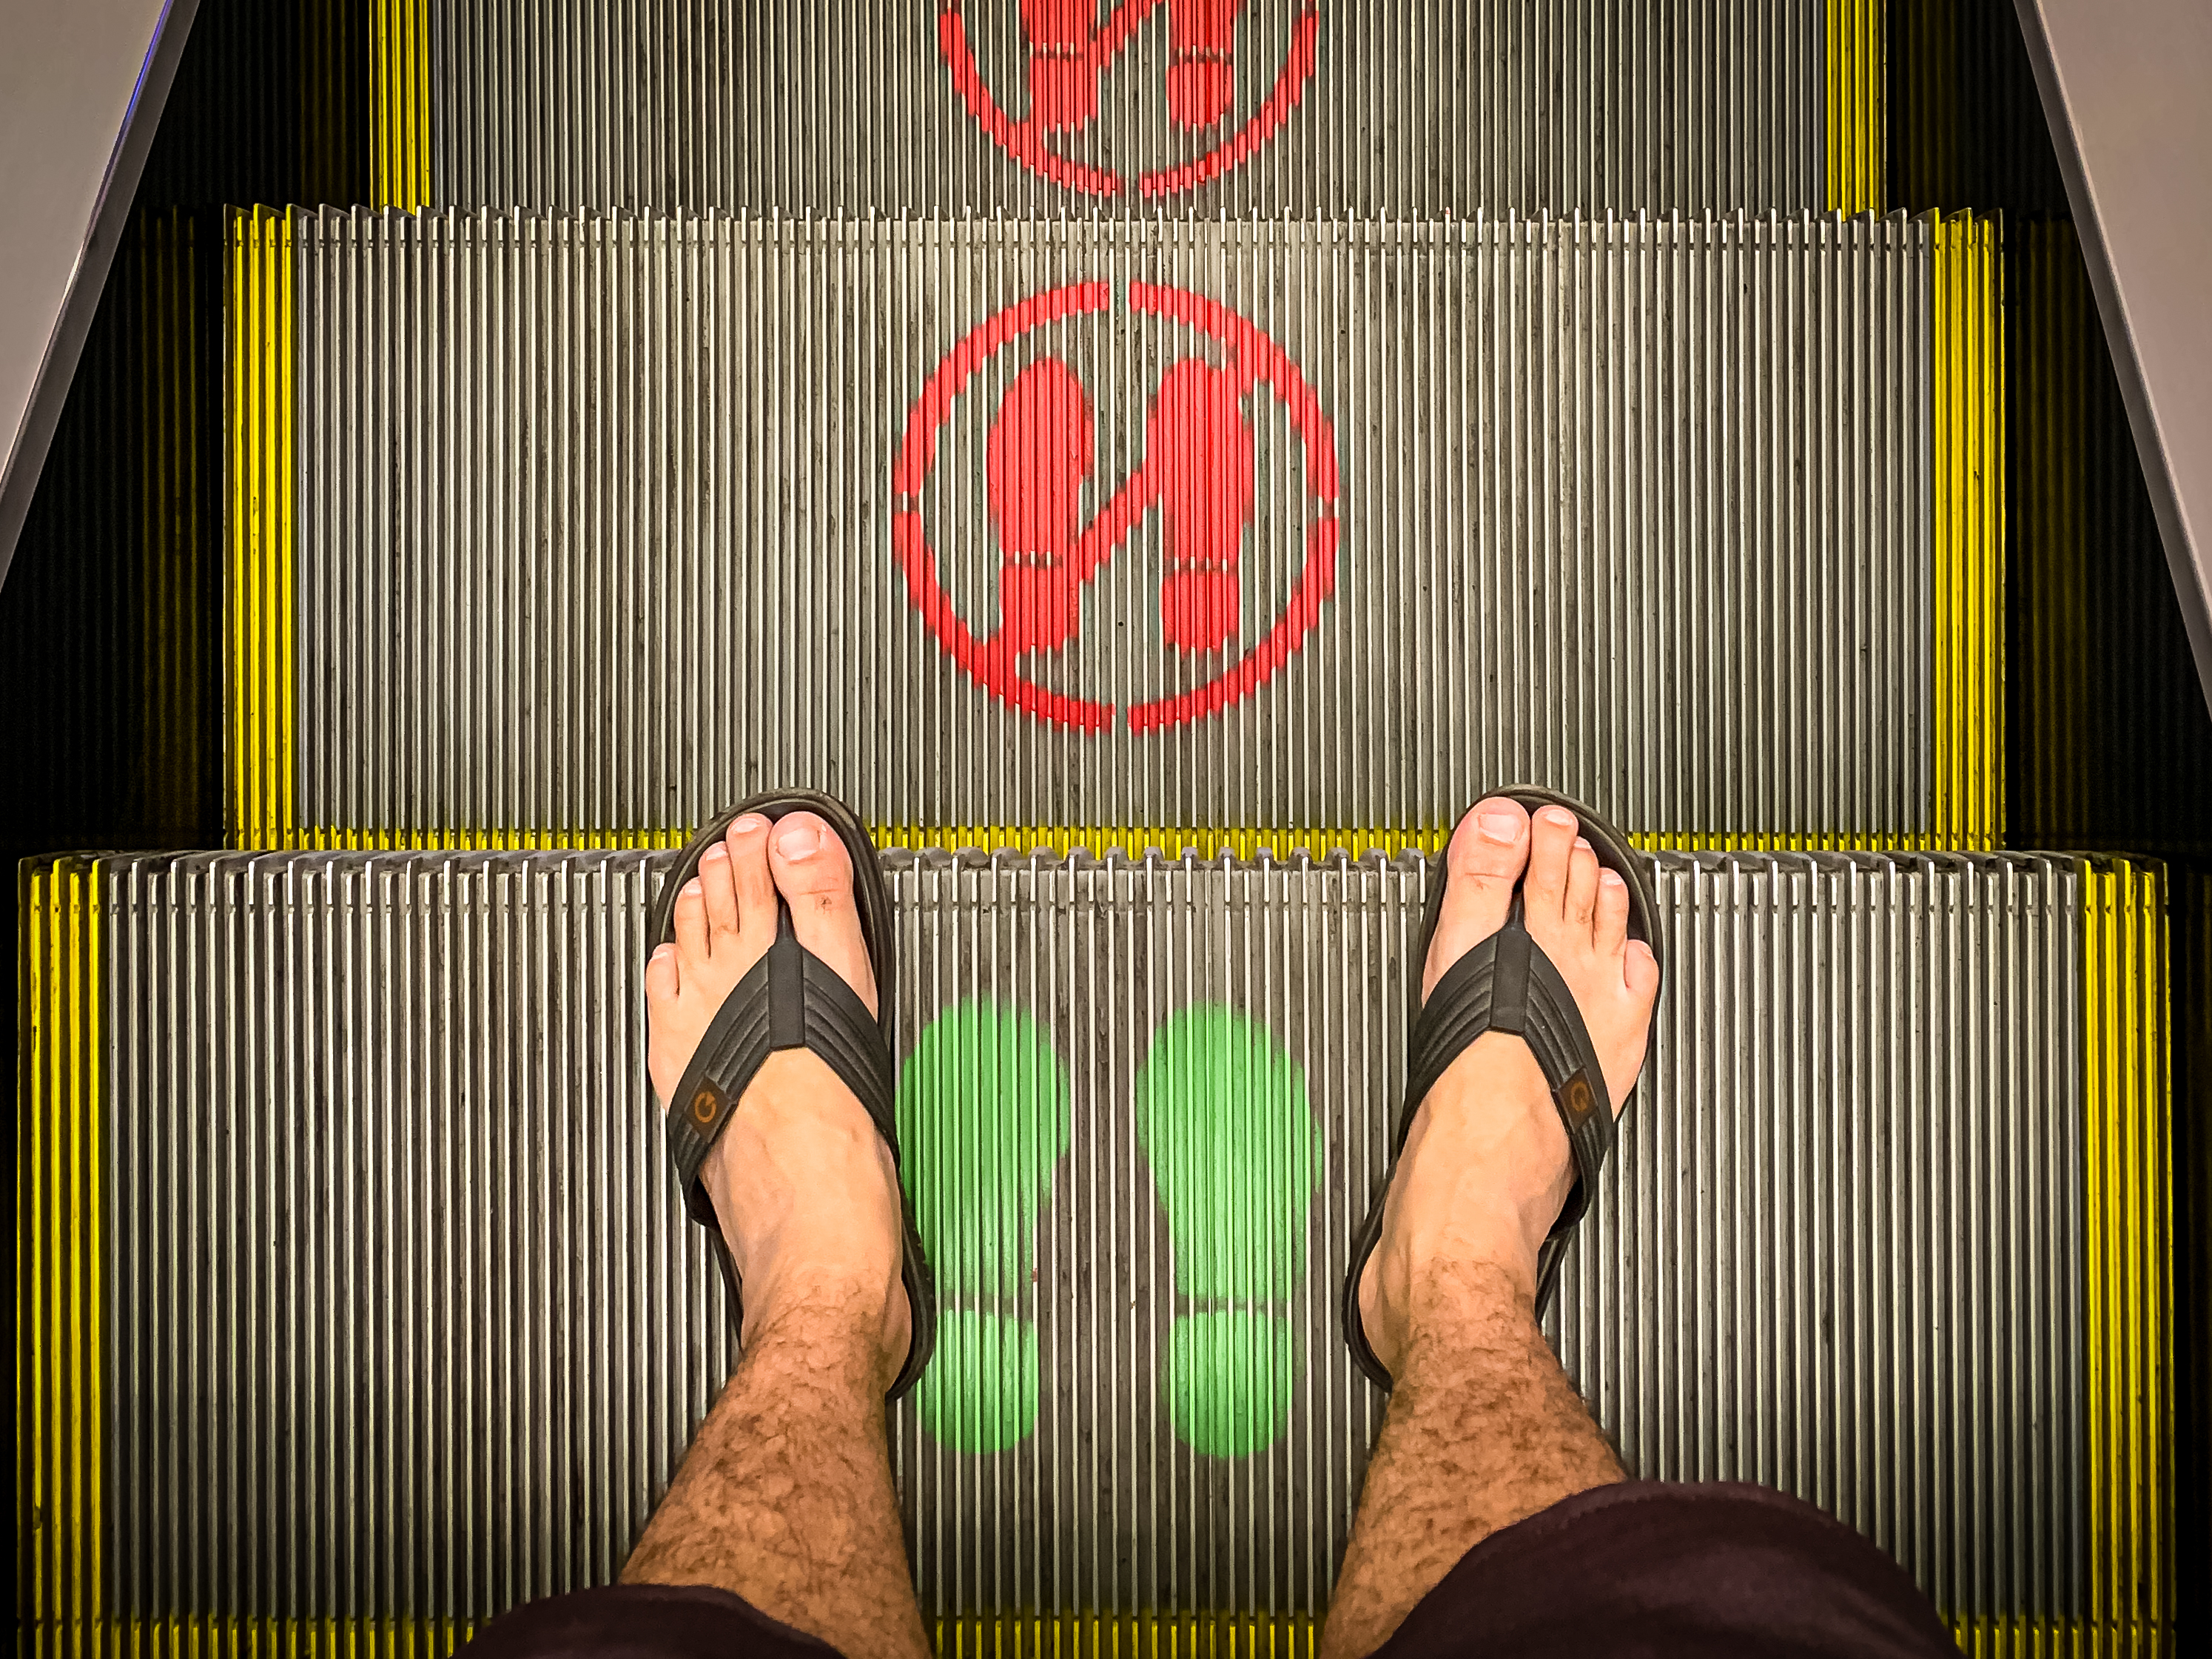 Foto com enfoque nos pés de uma pessoa em uma escada rolante. Na imagem, a pessoa pisa em um degrau com um símbolo verde, os dois degraus seguintes estão marcados com símbolos vermelhos